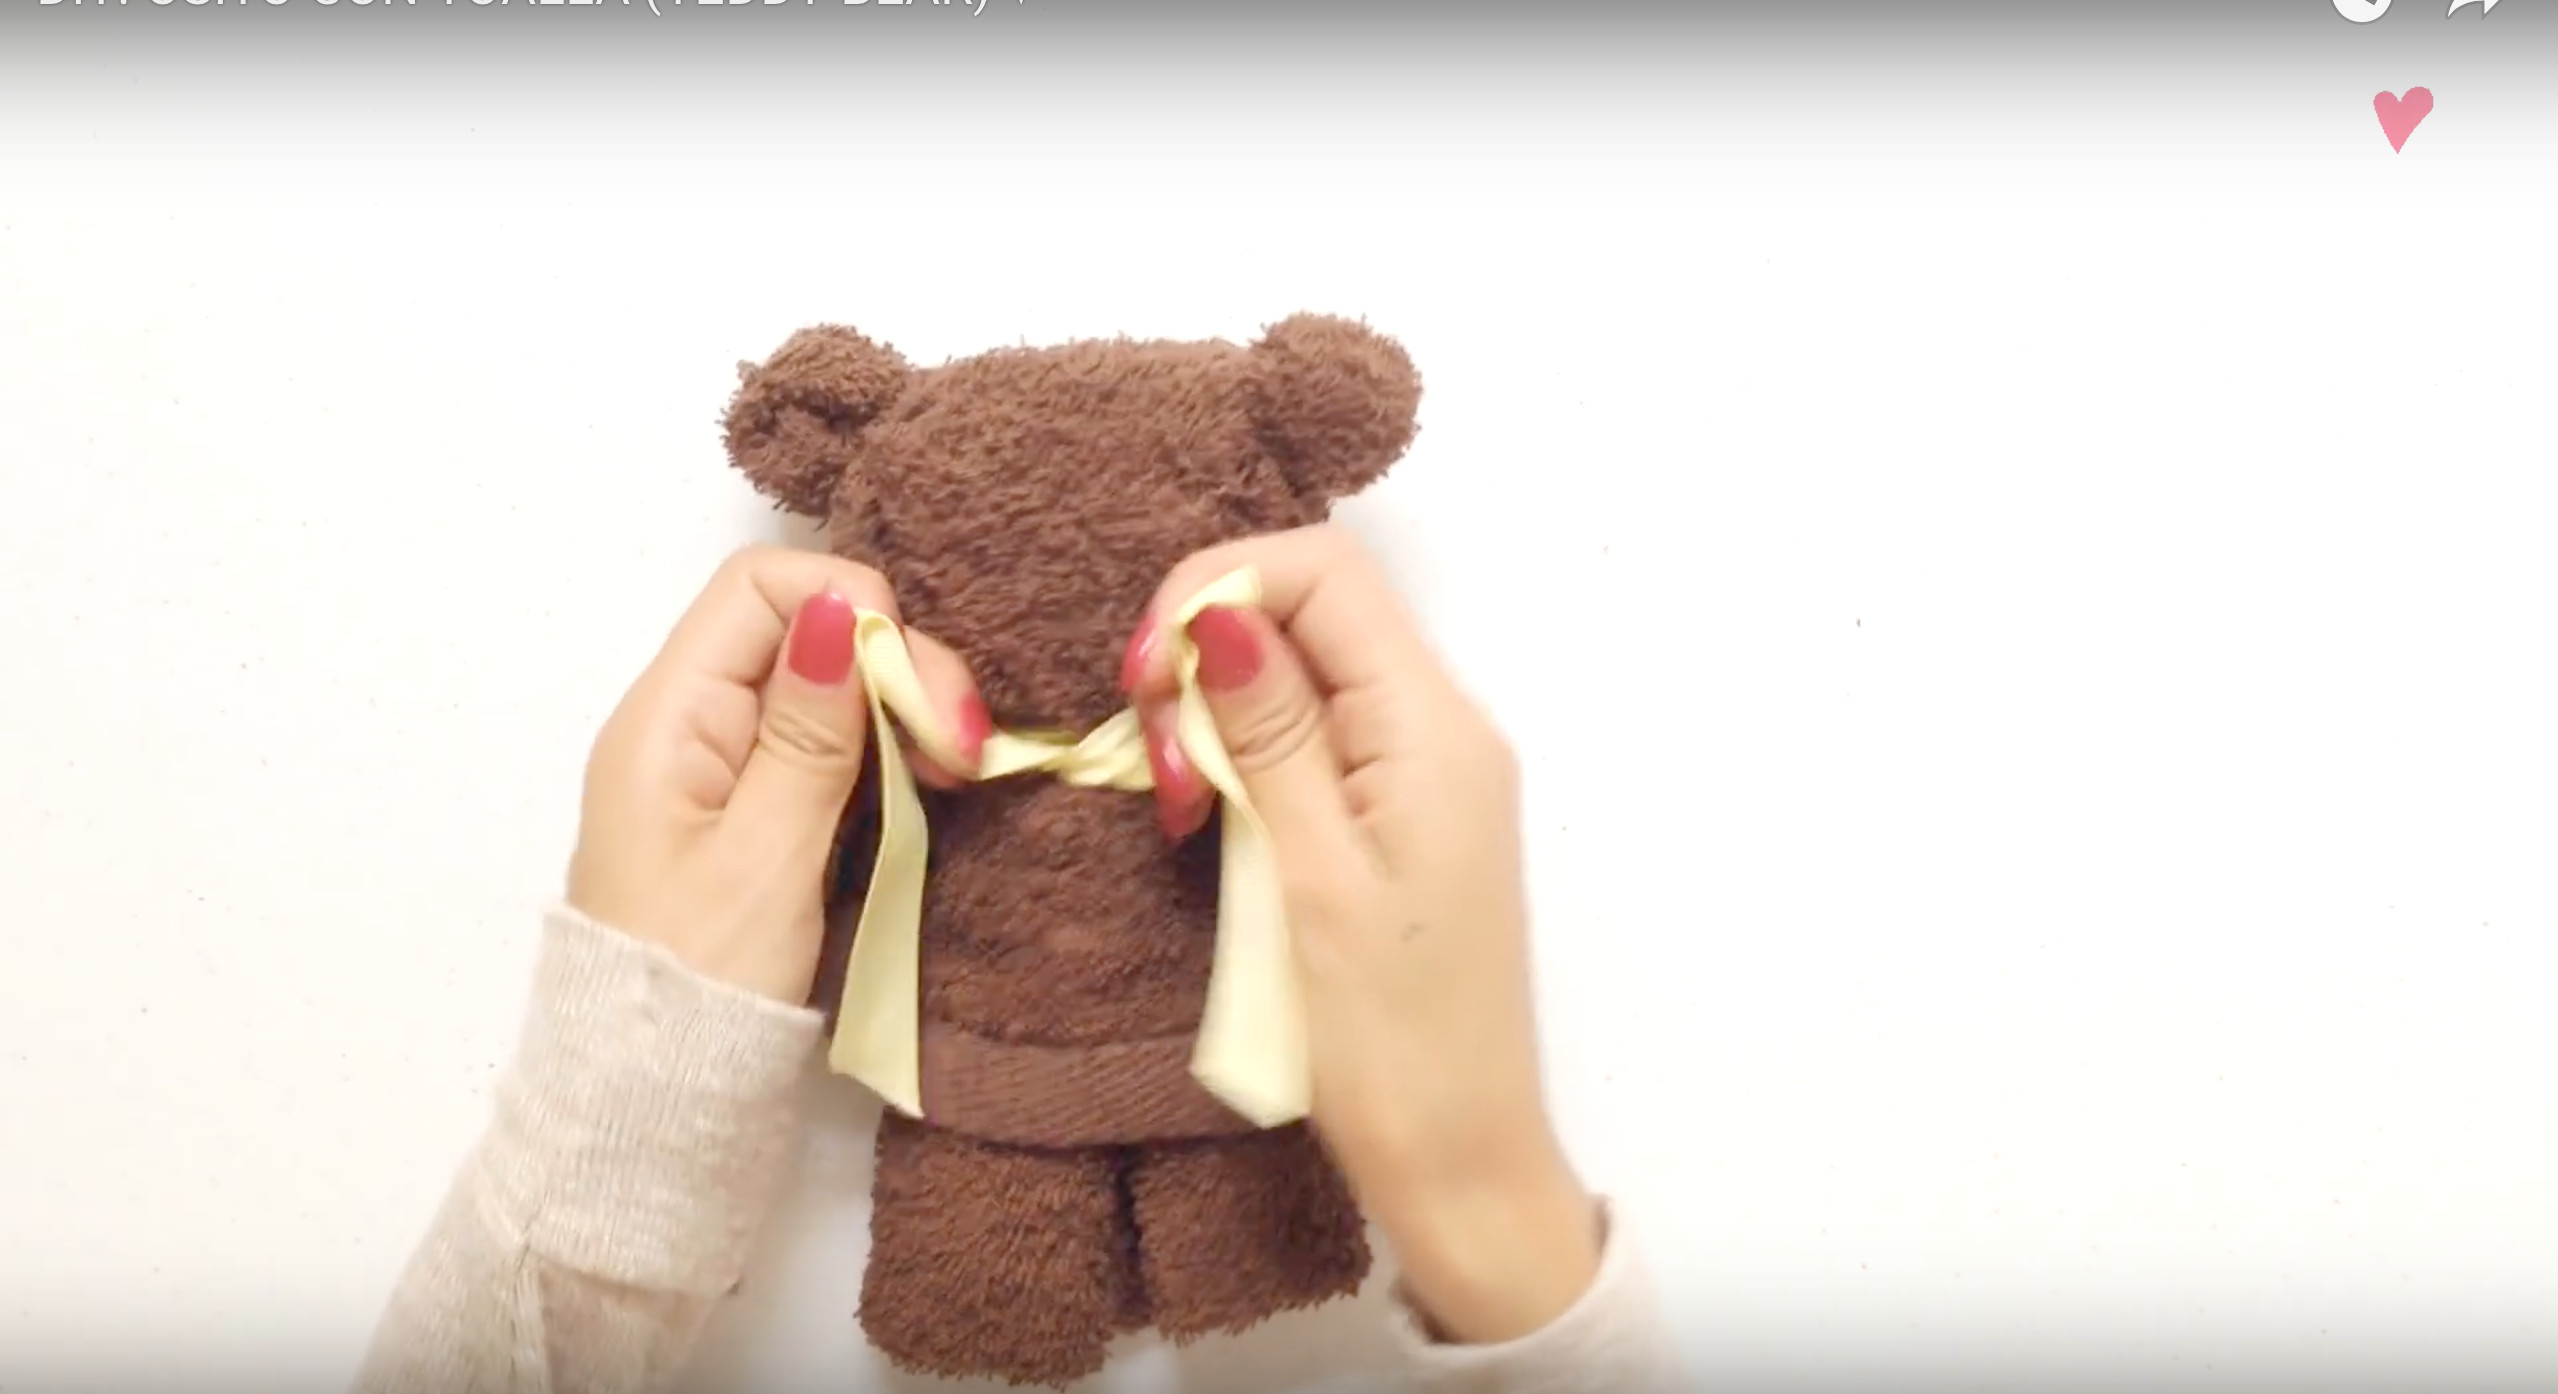 7步骤把毛巾摺成「泰迪熊」 超神想像力让手残人超震撼